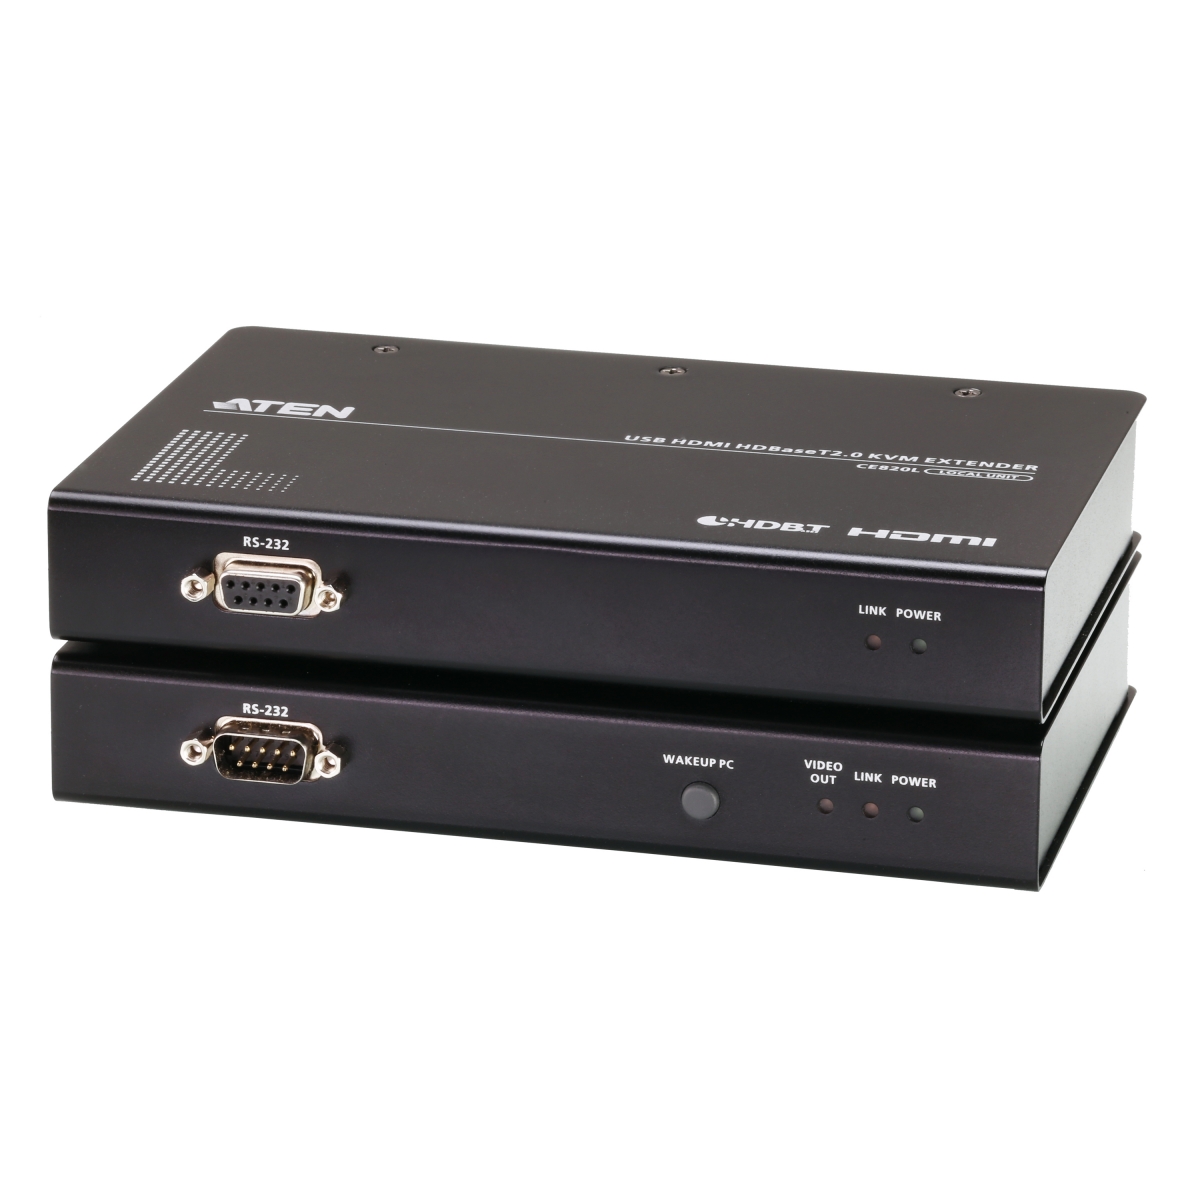 W-D-LINK Extendeur HDMI 1080P - 30M - Câble Ethernet LAN CAT5e & CAT6